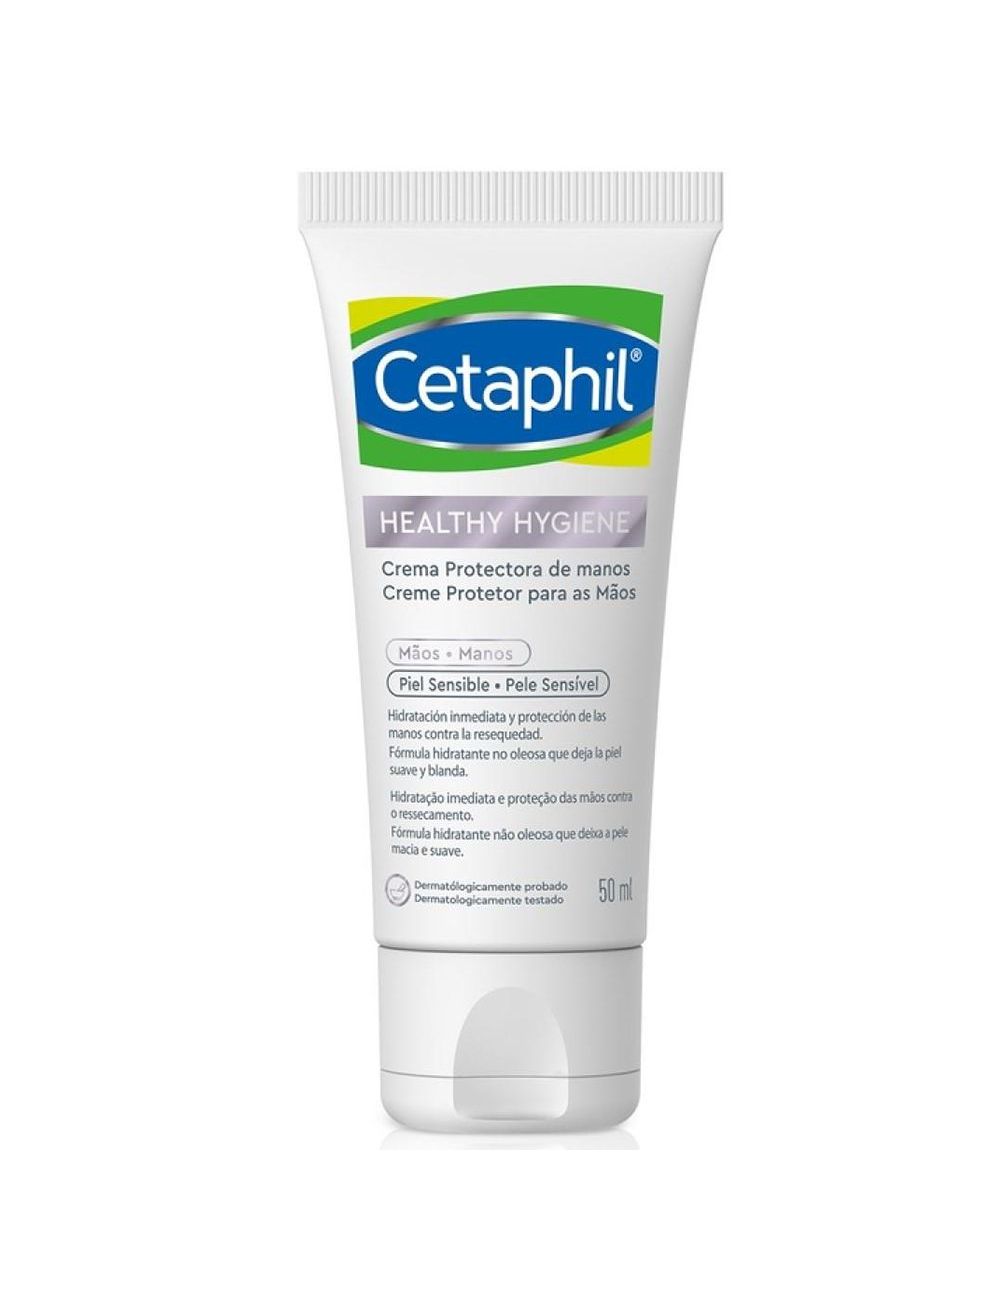 Cetaphil Healthy Hygiene Crema Protectora De Manos 50 g